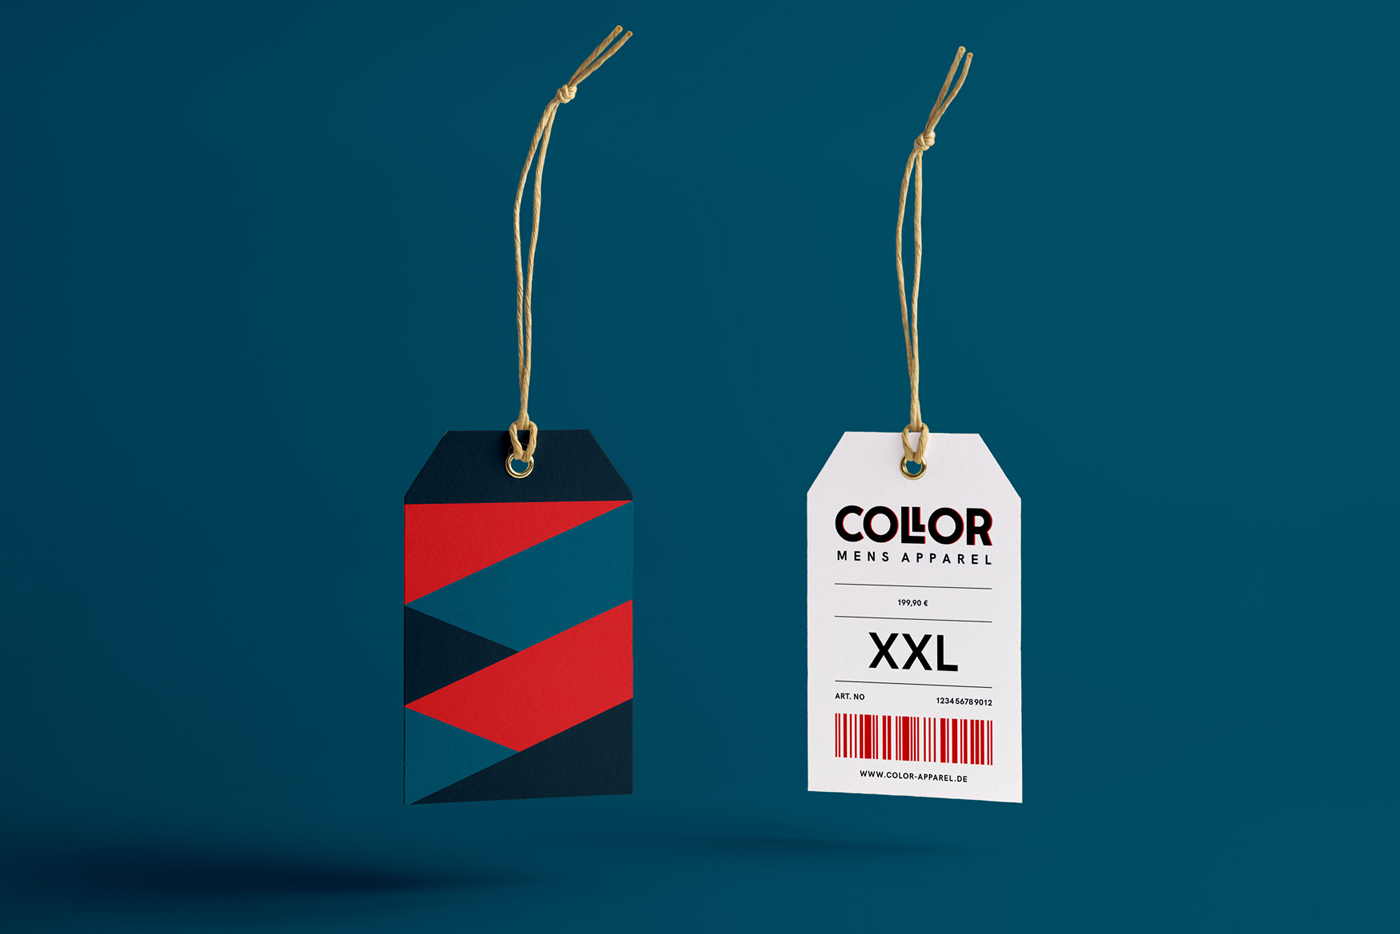 Collor-label-1